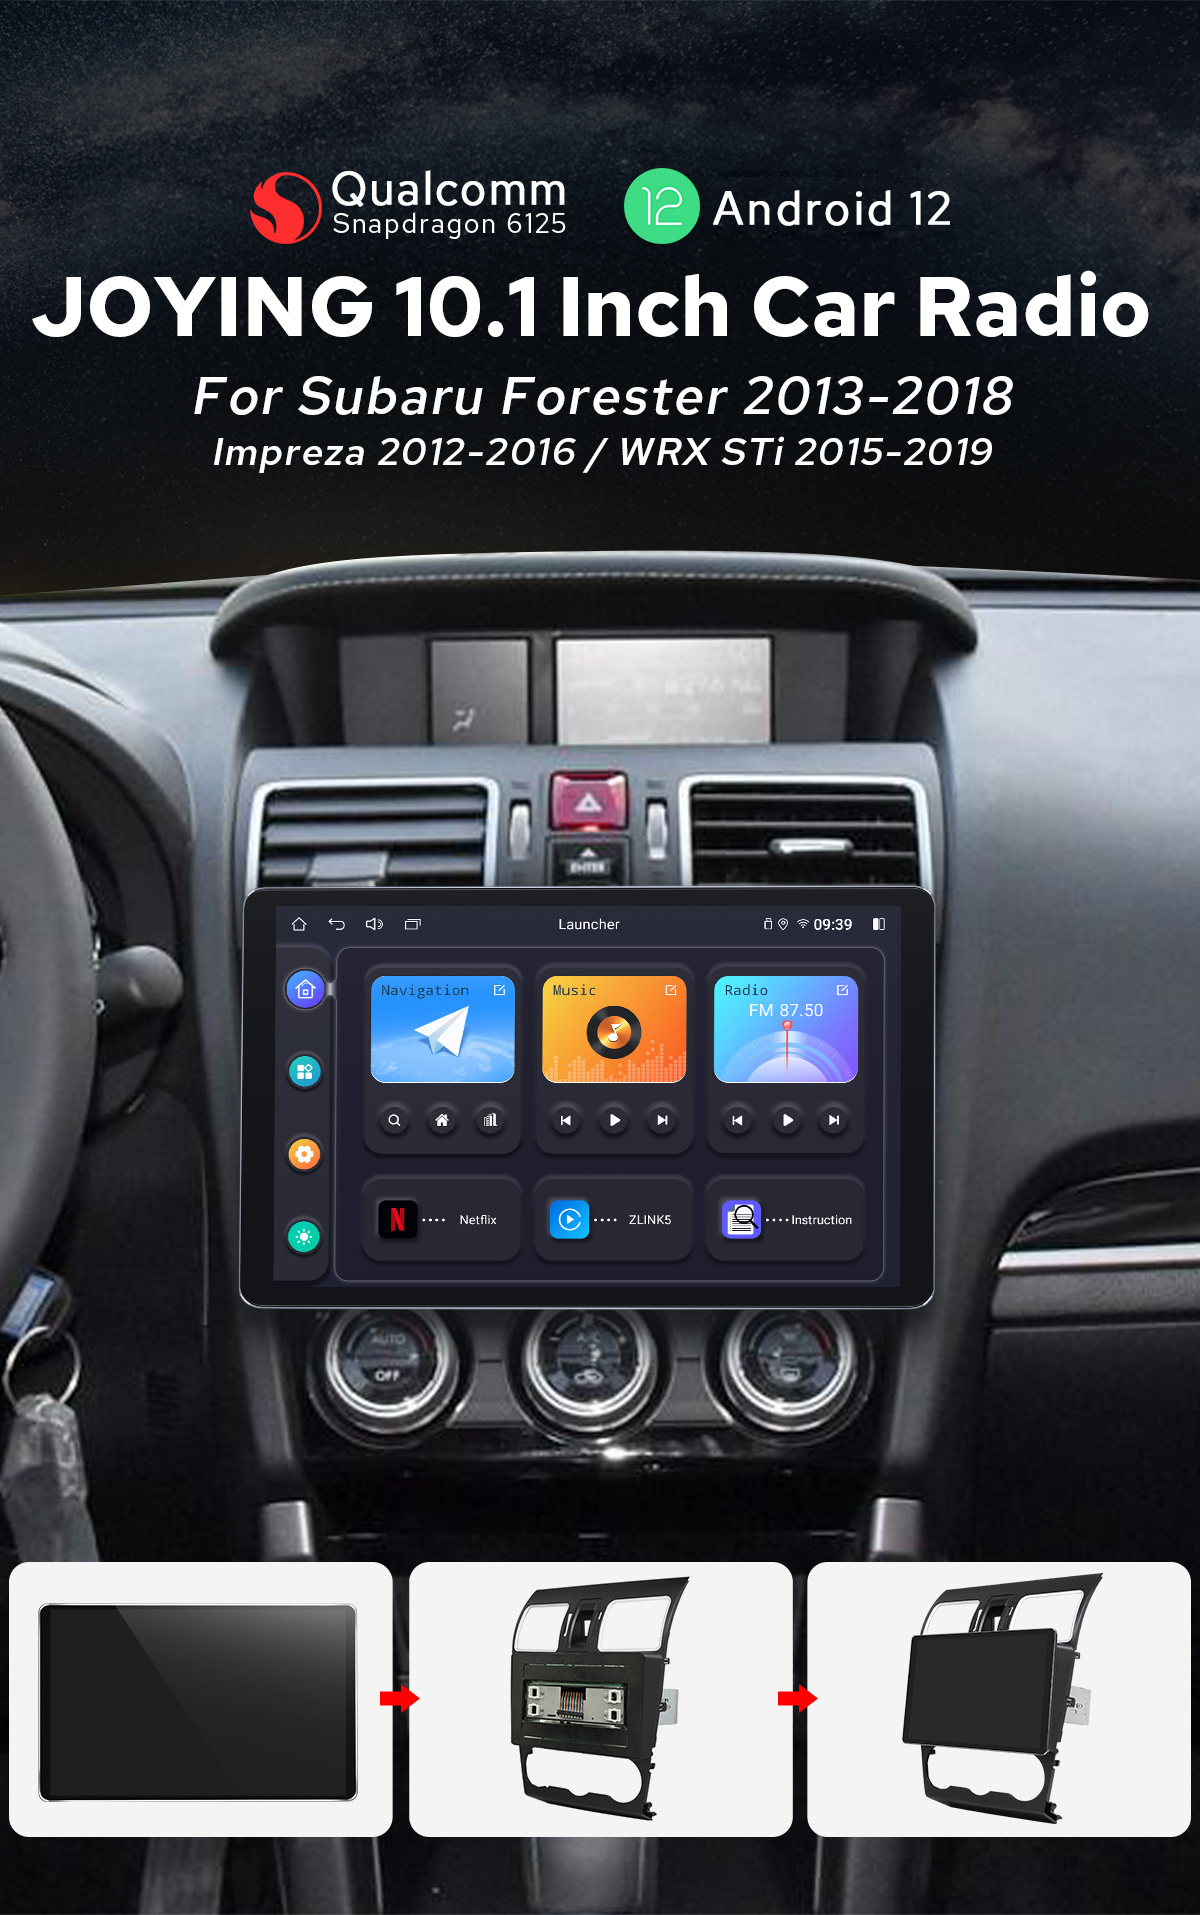  For 2012-2016 Subaru Forester Impreza